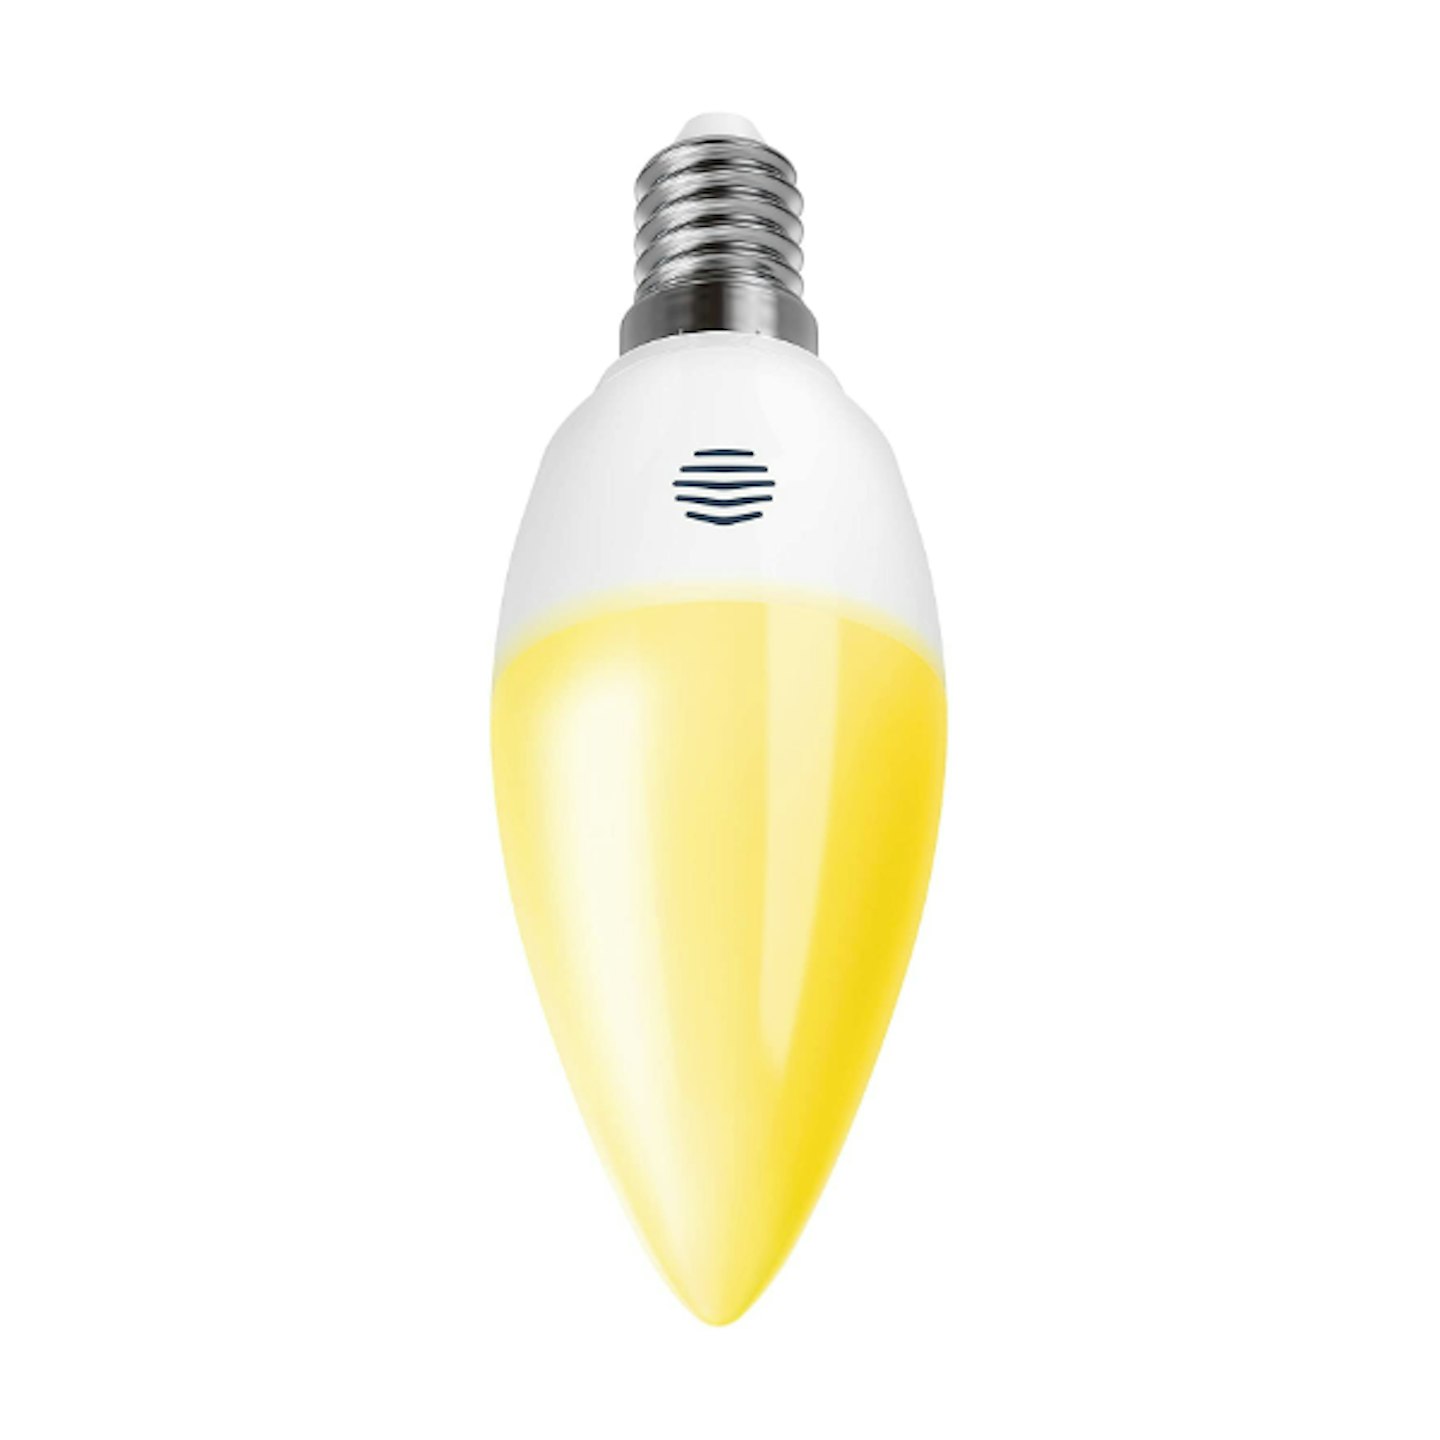 Hive Smart Bulb